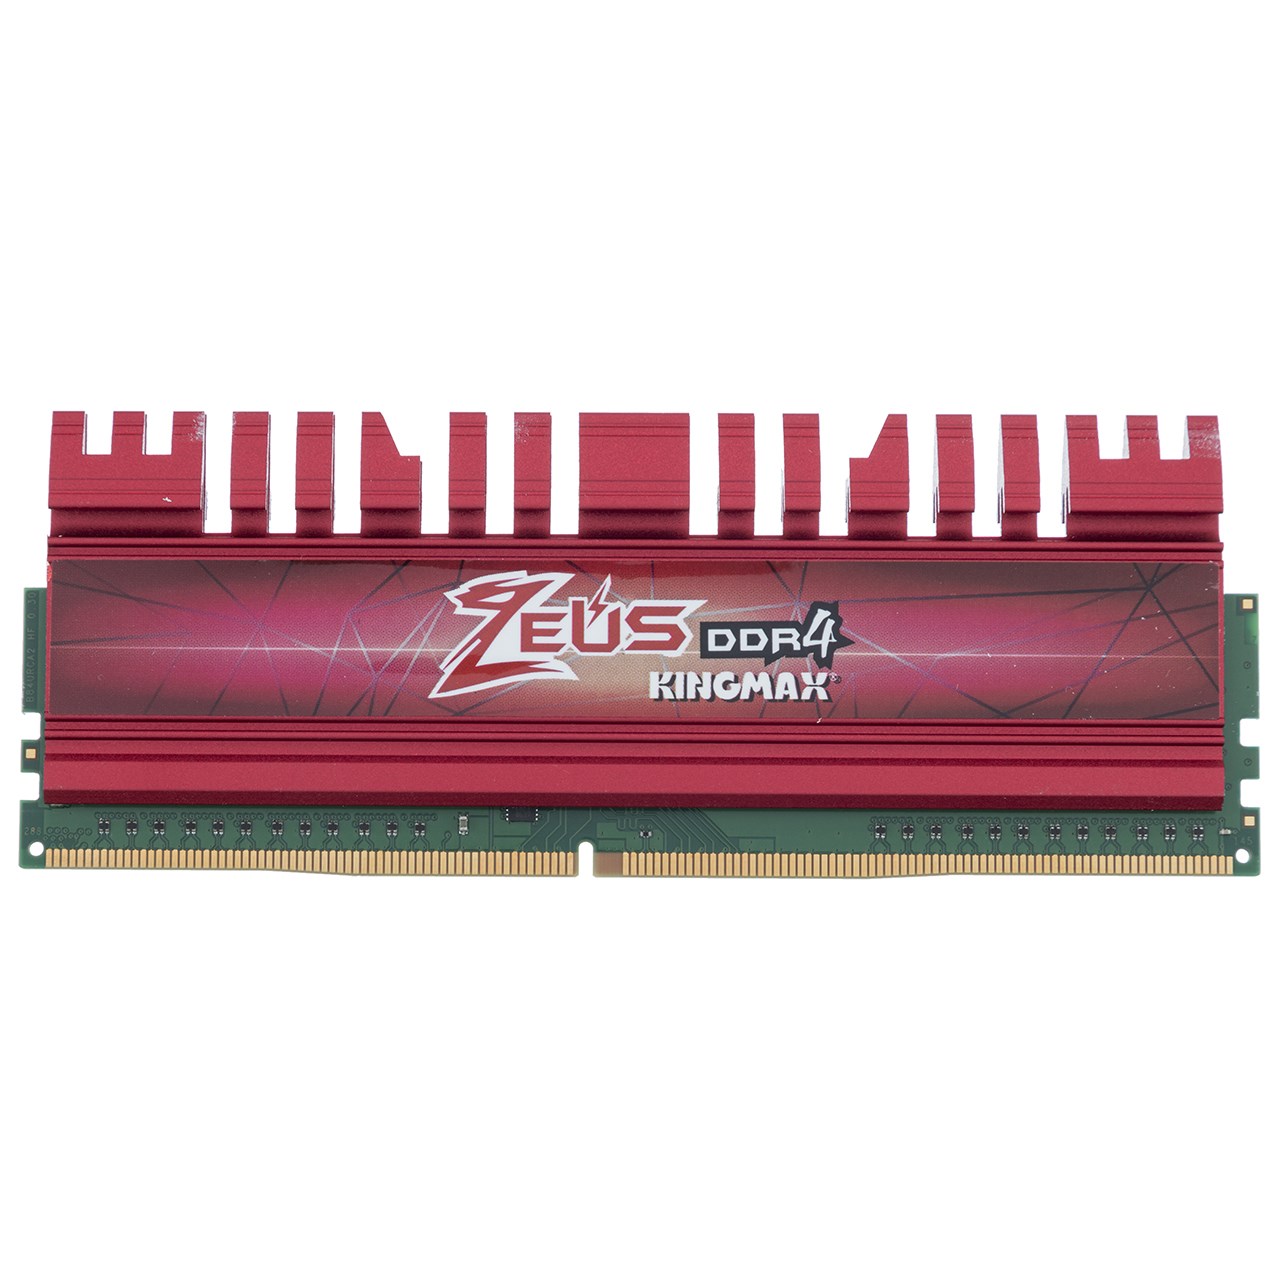 رم دسکتاپ DDR4 تک کاناله 2800 مگاهرتز CL17 کینگ مکس مدل Zeus ظرفیت 8 گیگابایت